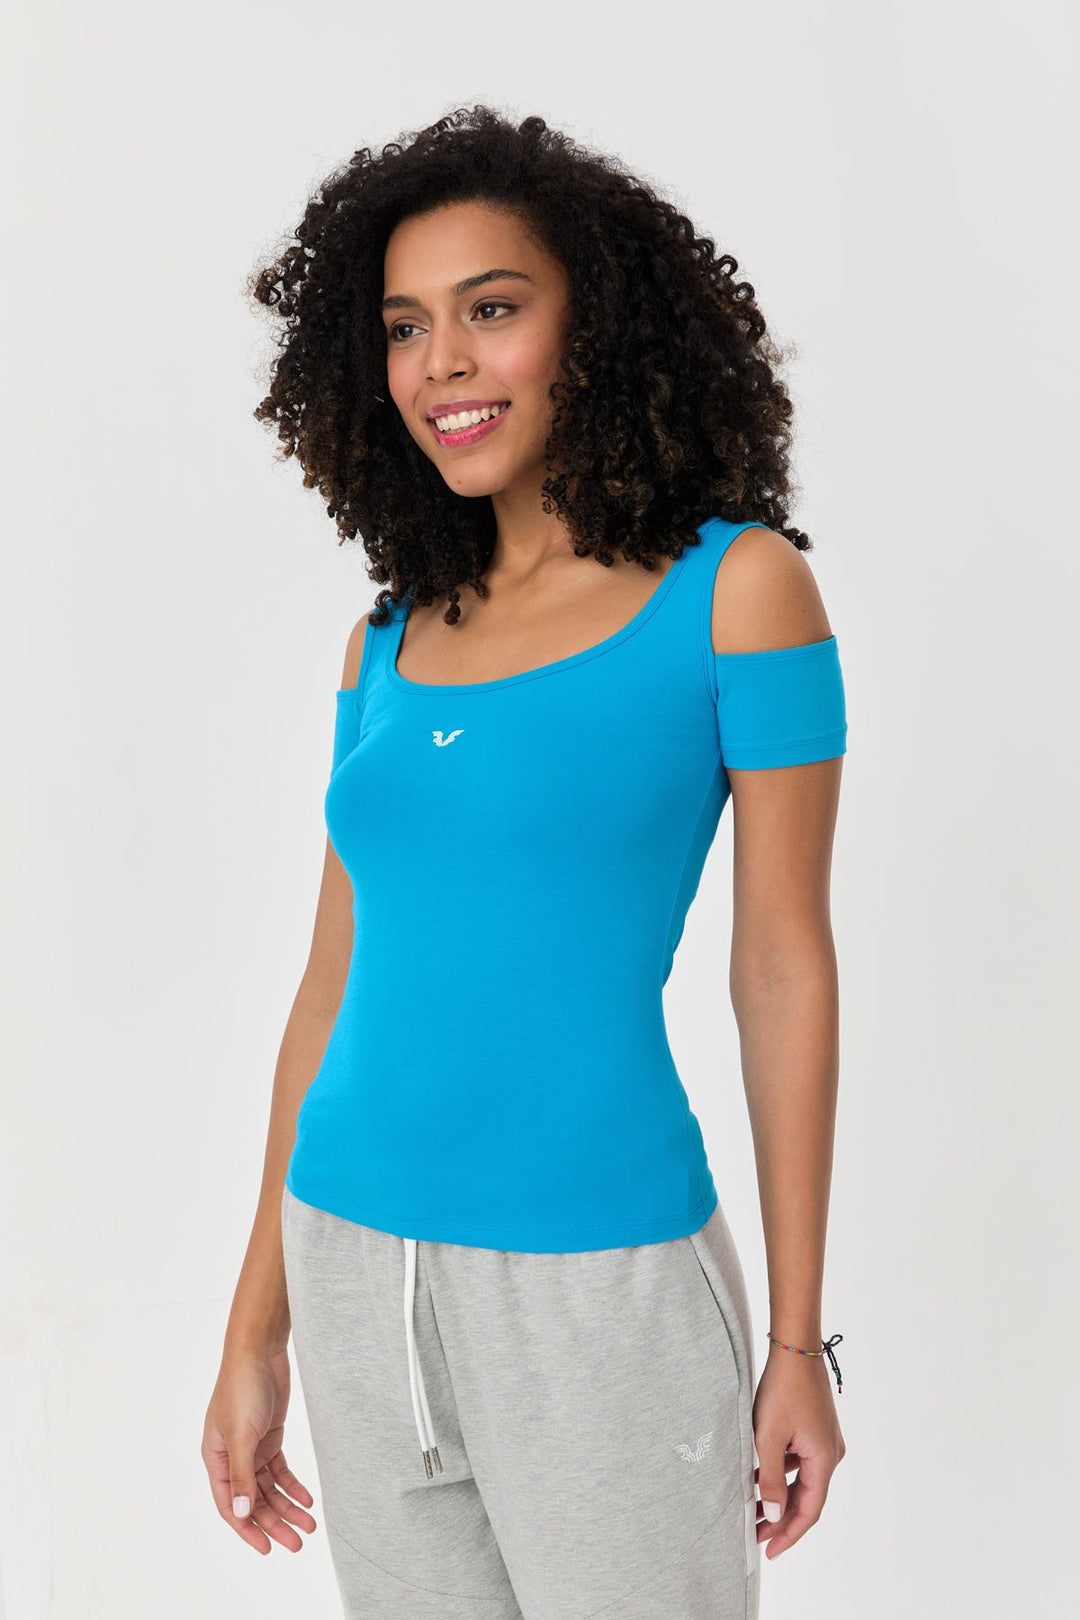 Damen-Sport-T-Shirt aus Baumwoll-Lycra